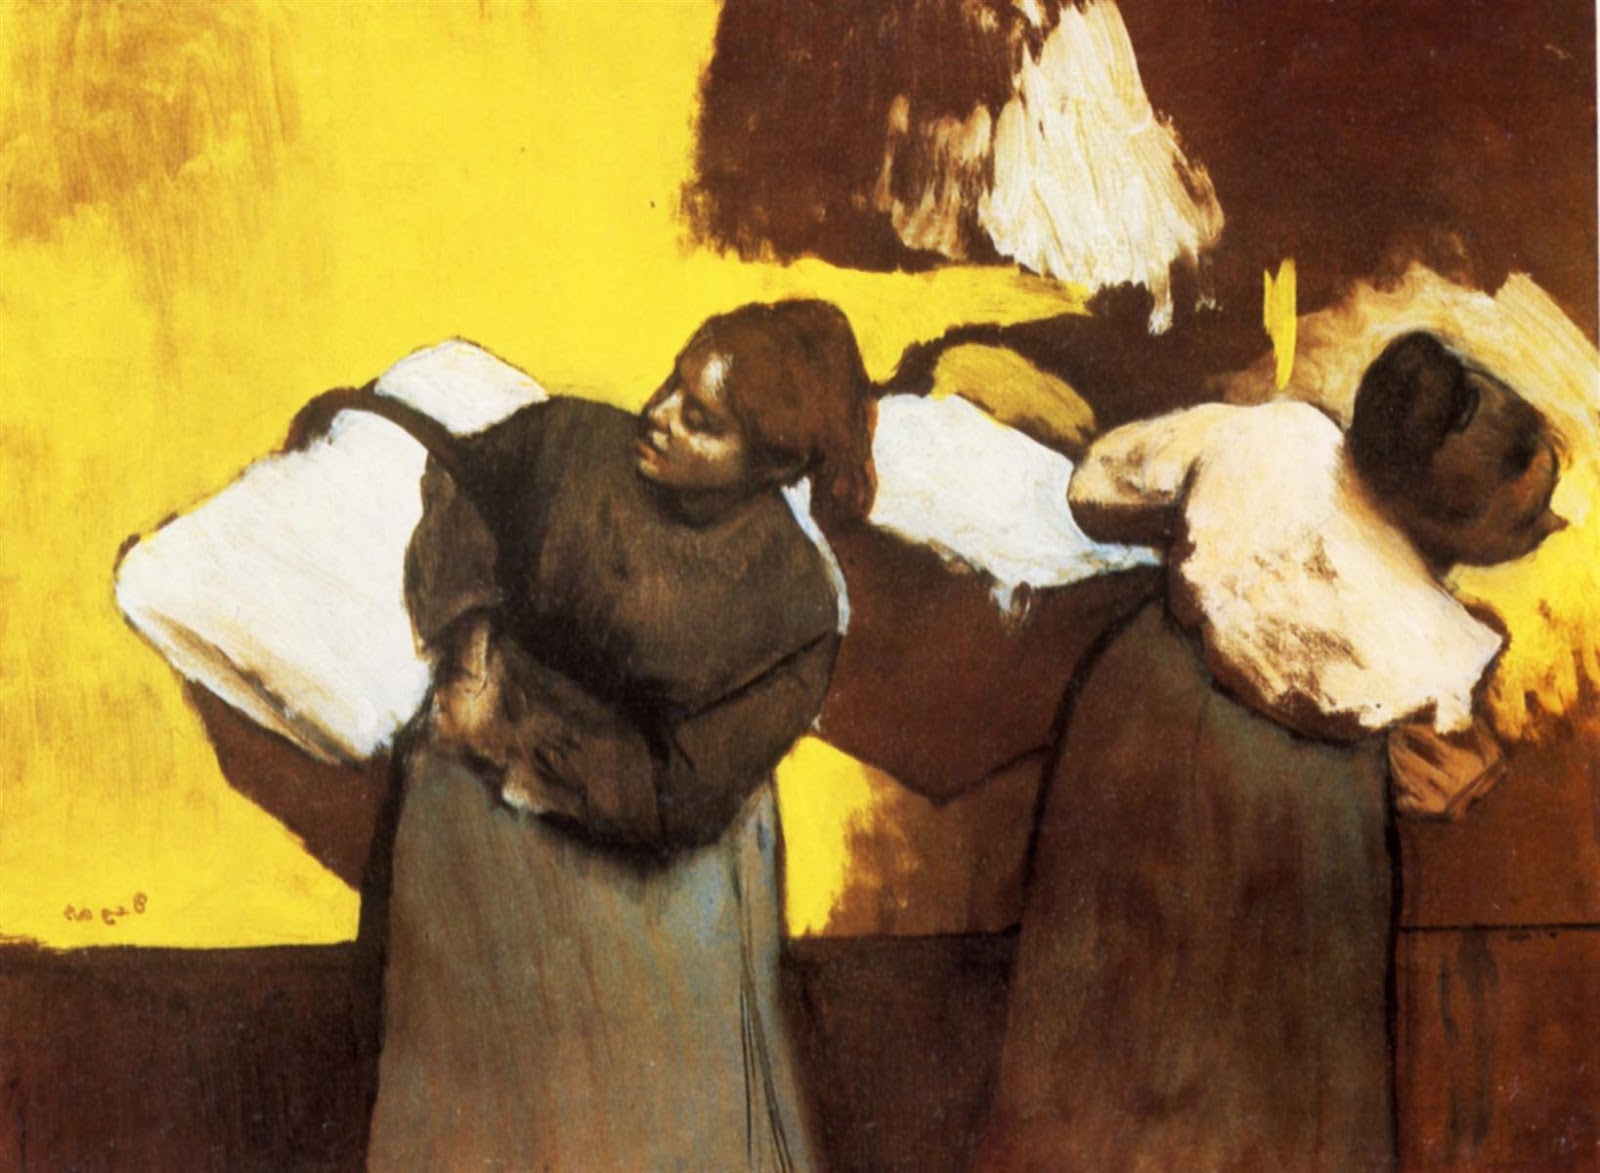 Edgar+Degas-1834-1917 (518).jpg